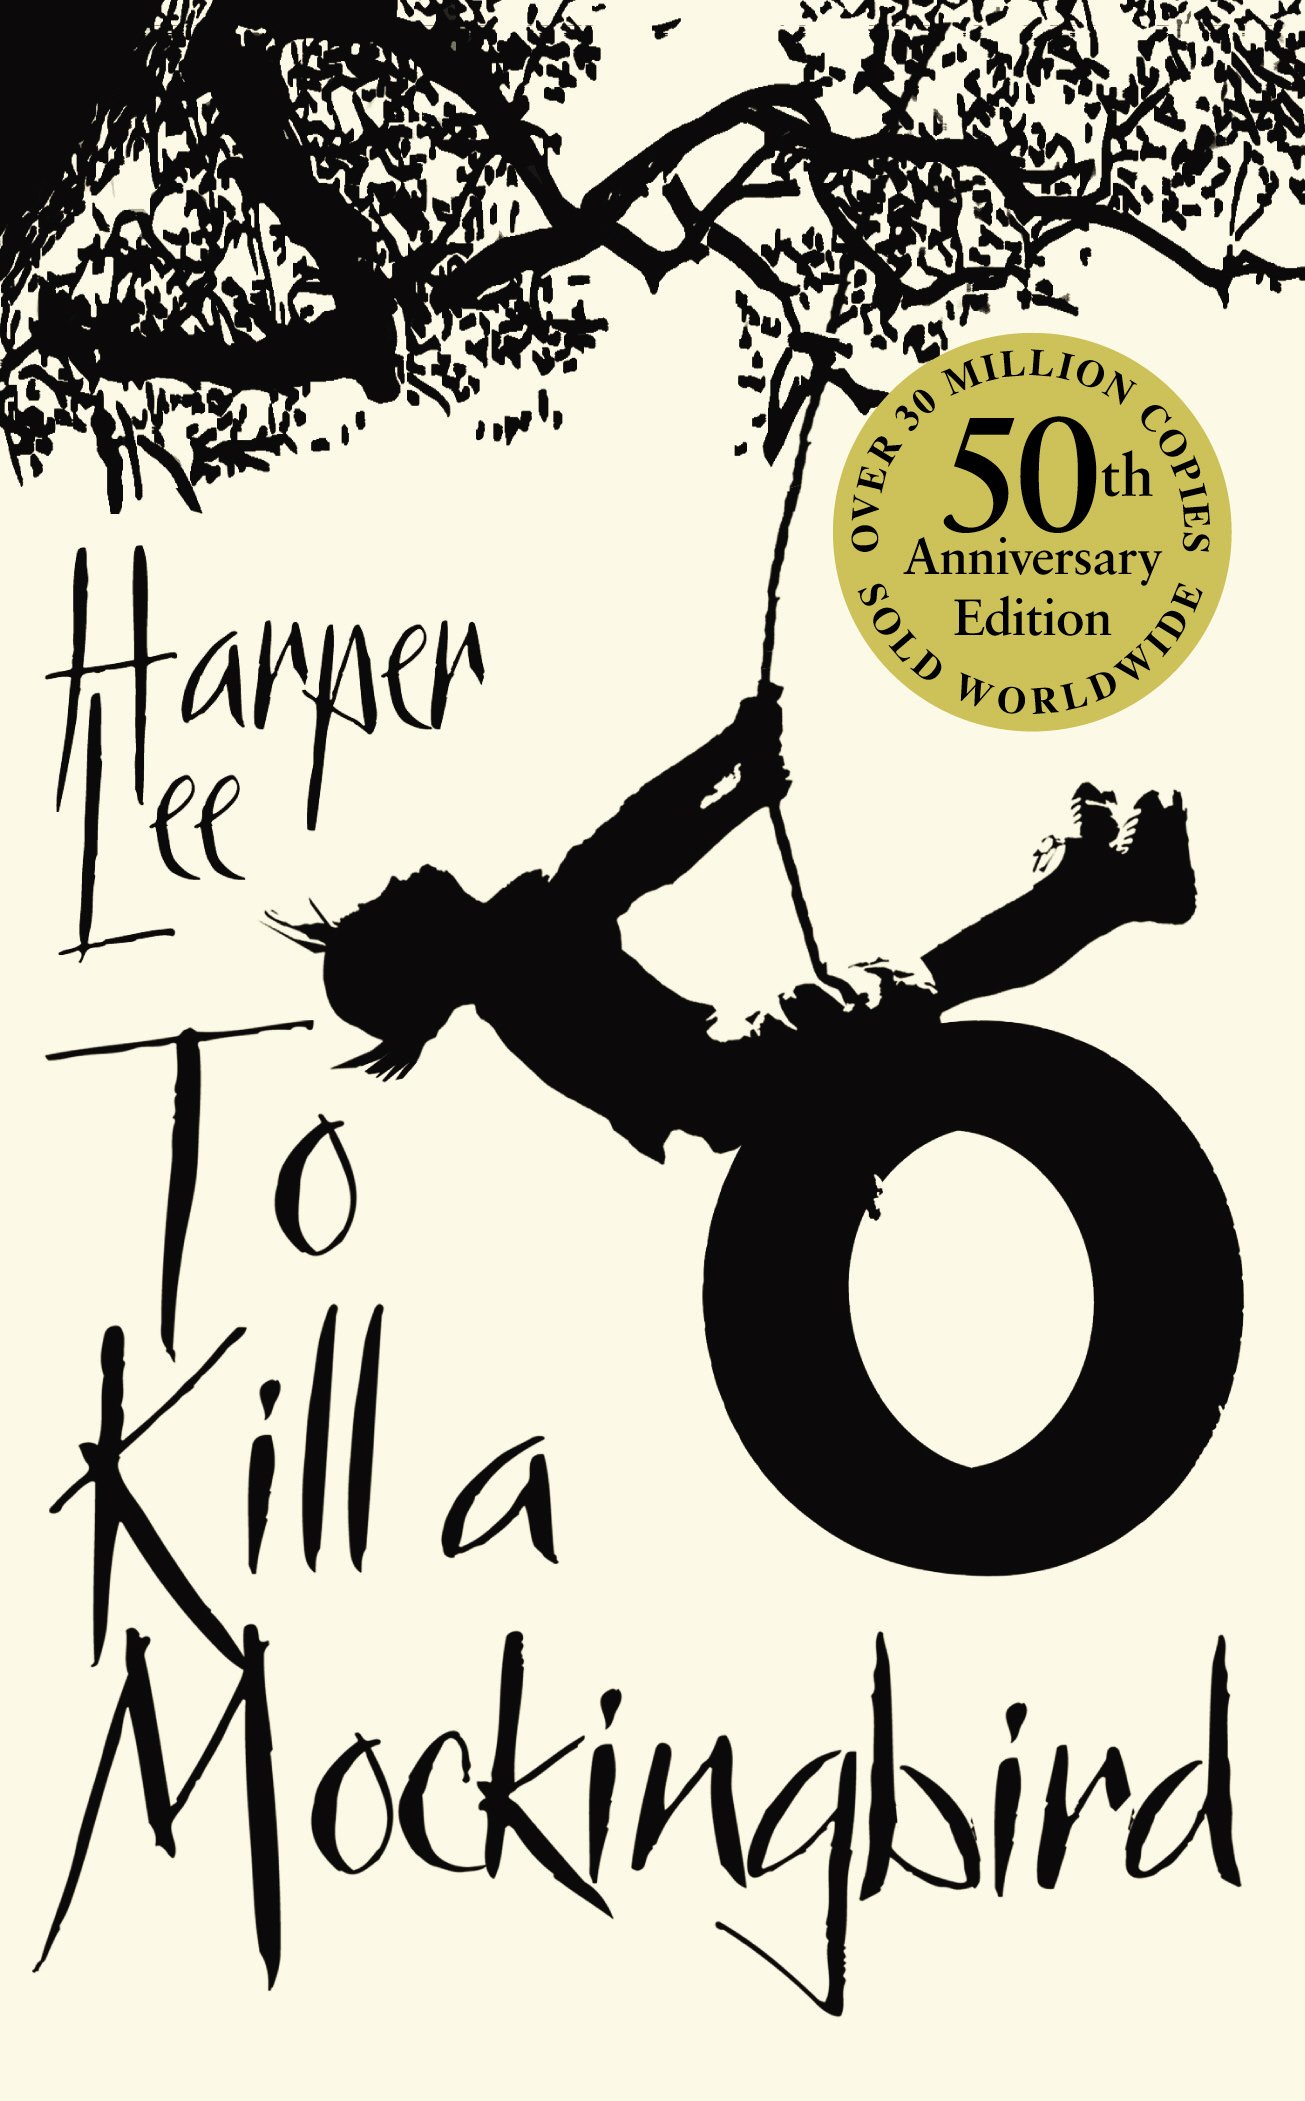 book review to kill a mockingbird